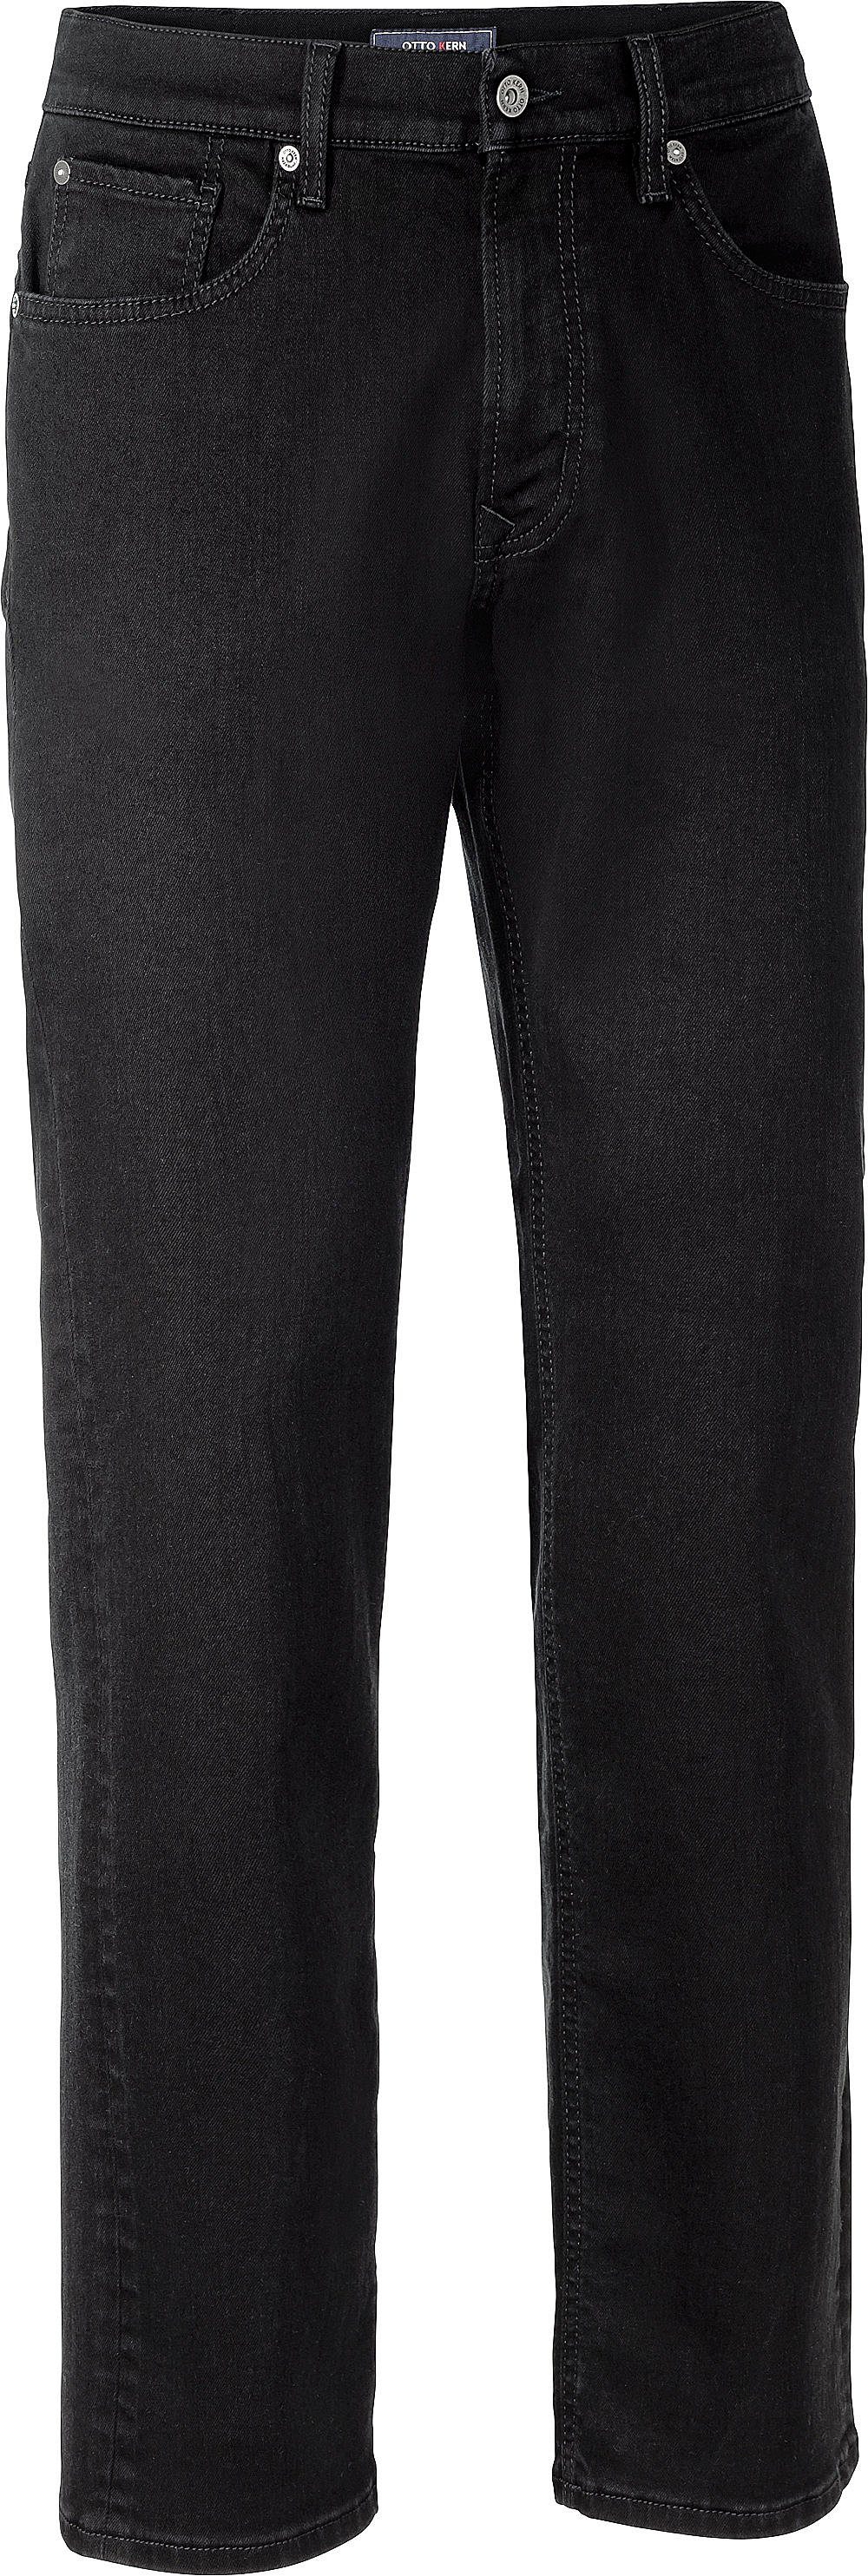 Otto Kern Kern Stretch-Jeans perfekter mit Sitz schwarz Stretch-Anteil